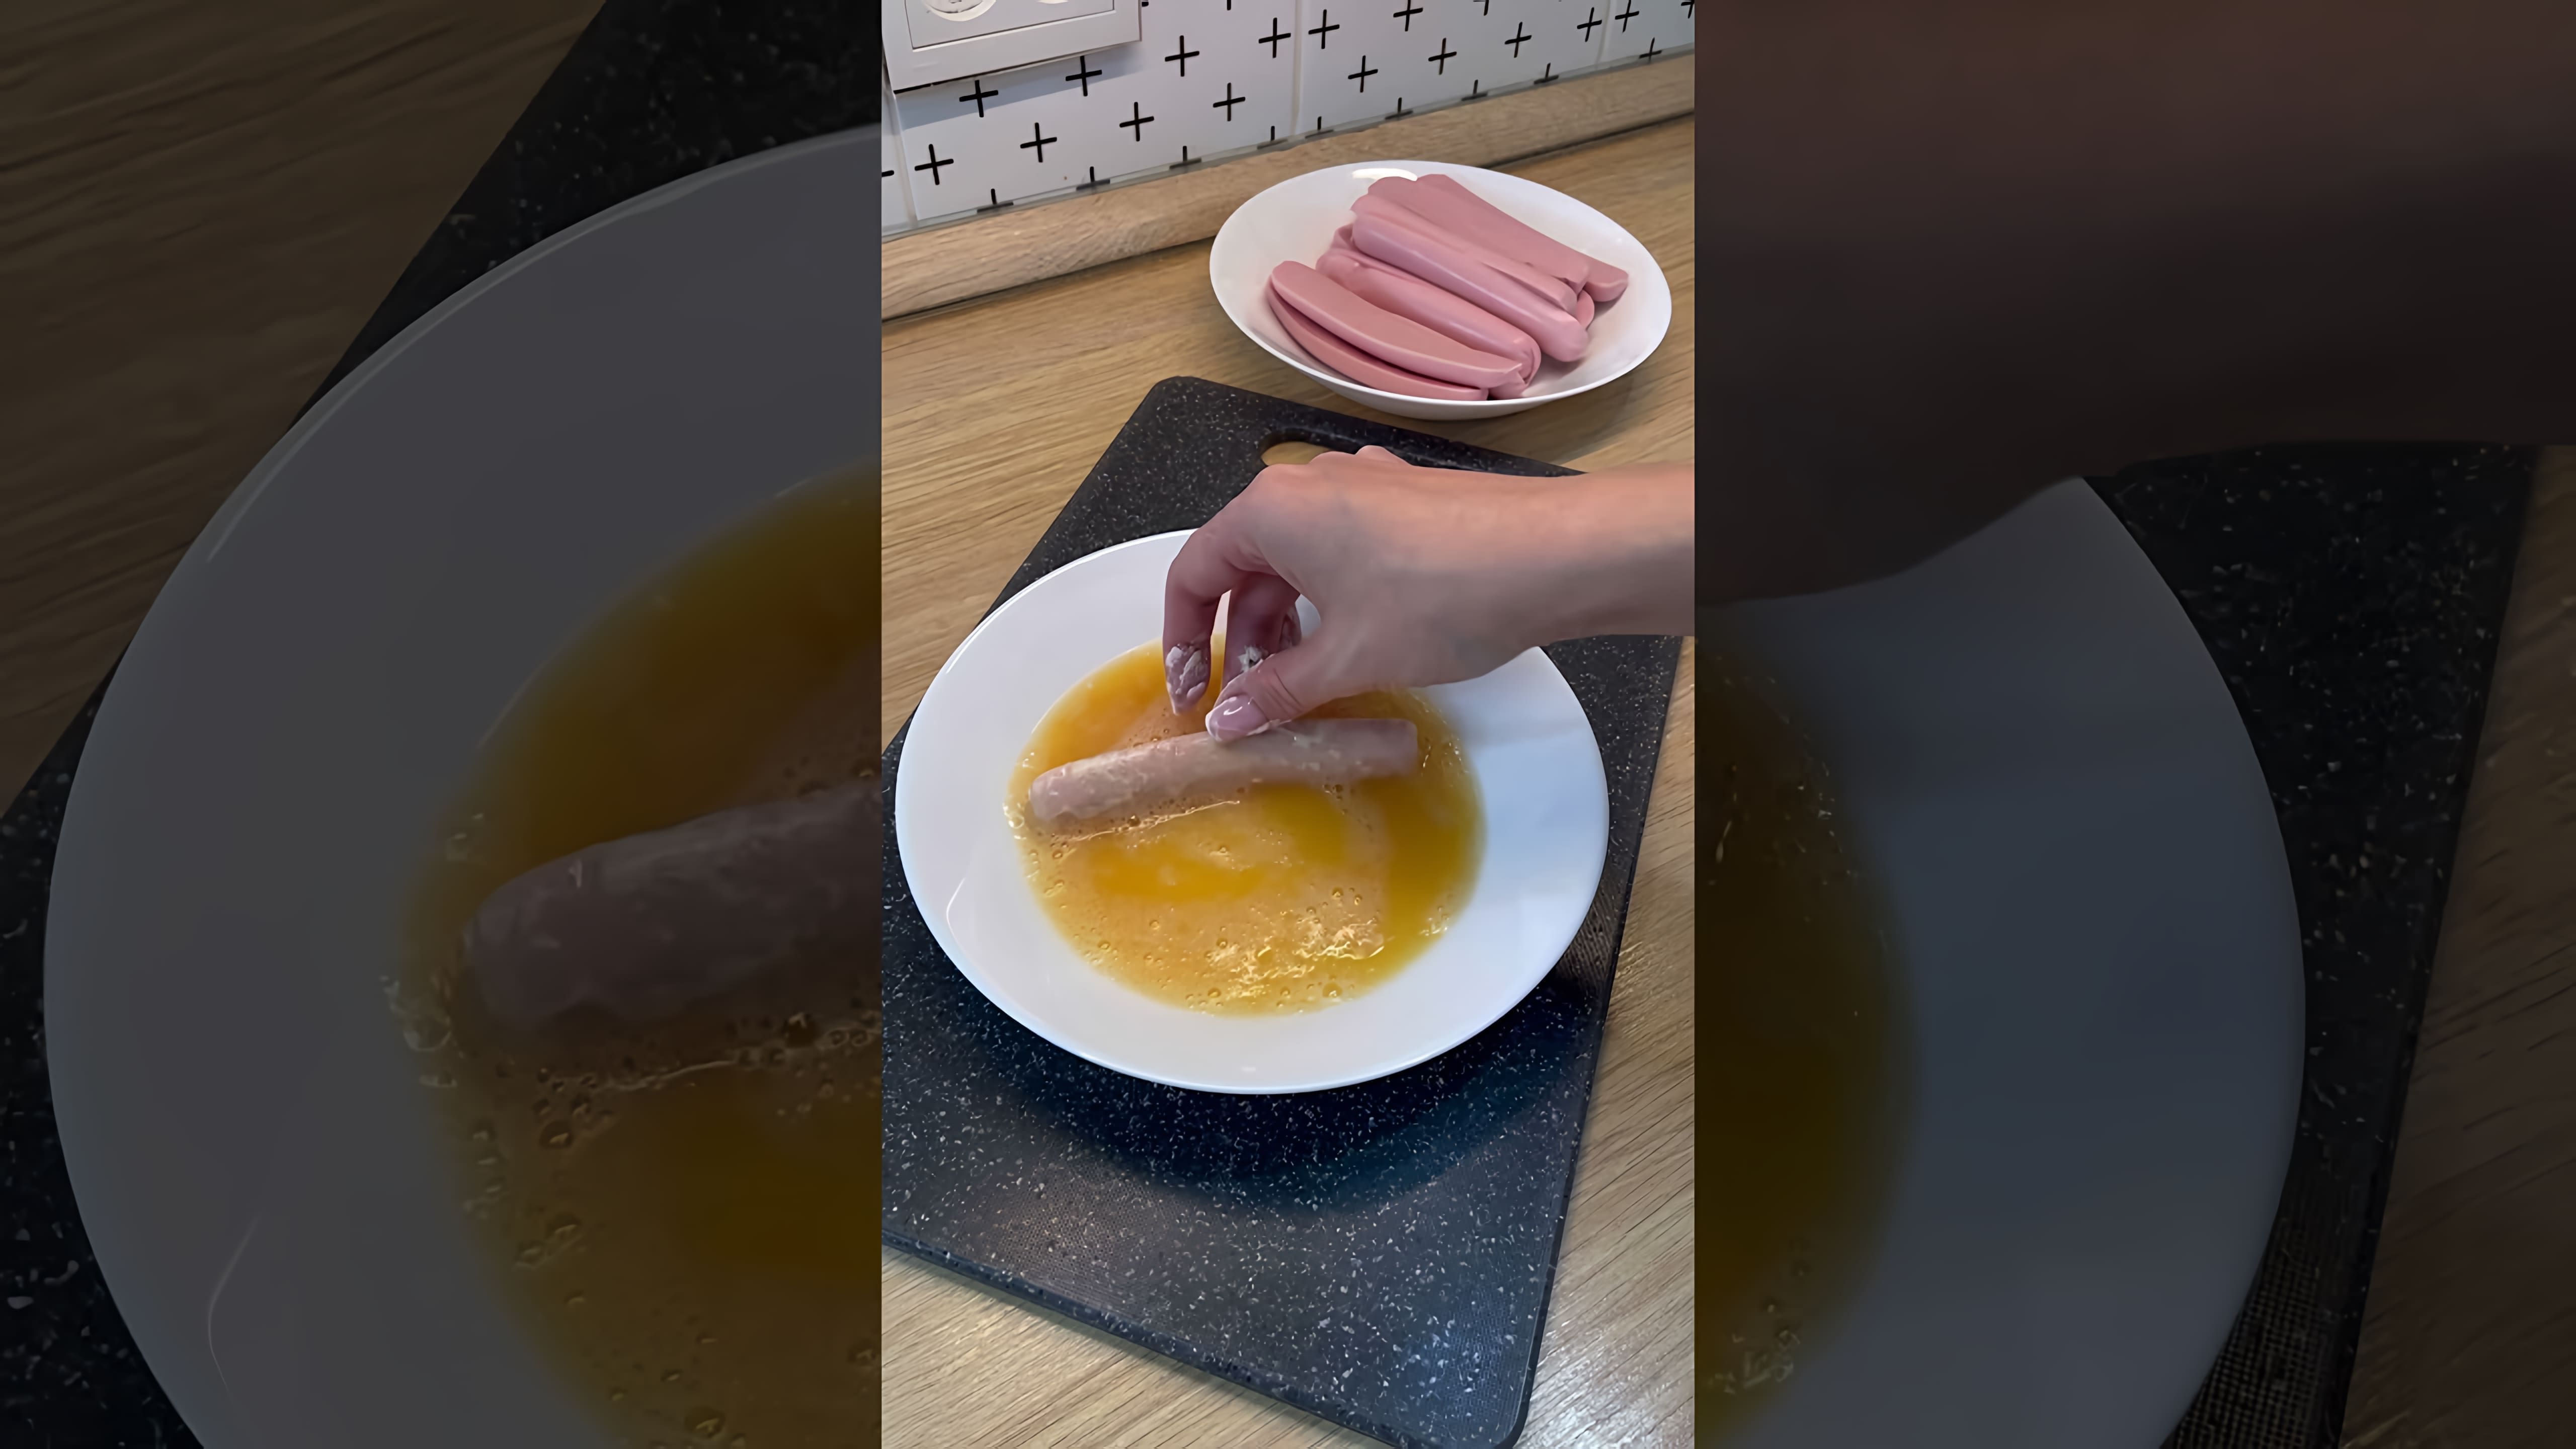 В этом видео демонстрируется быстрый и простой рецепт приготовления вкусной закуски из сосисок